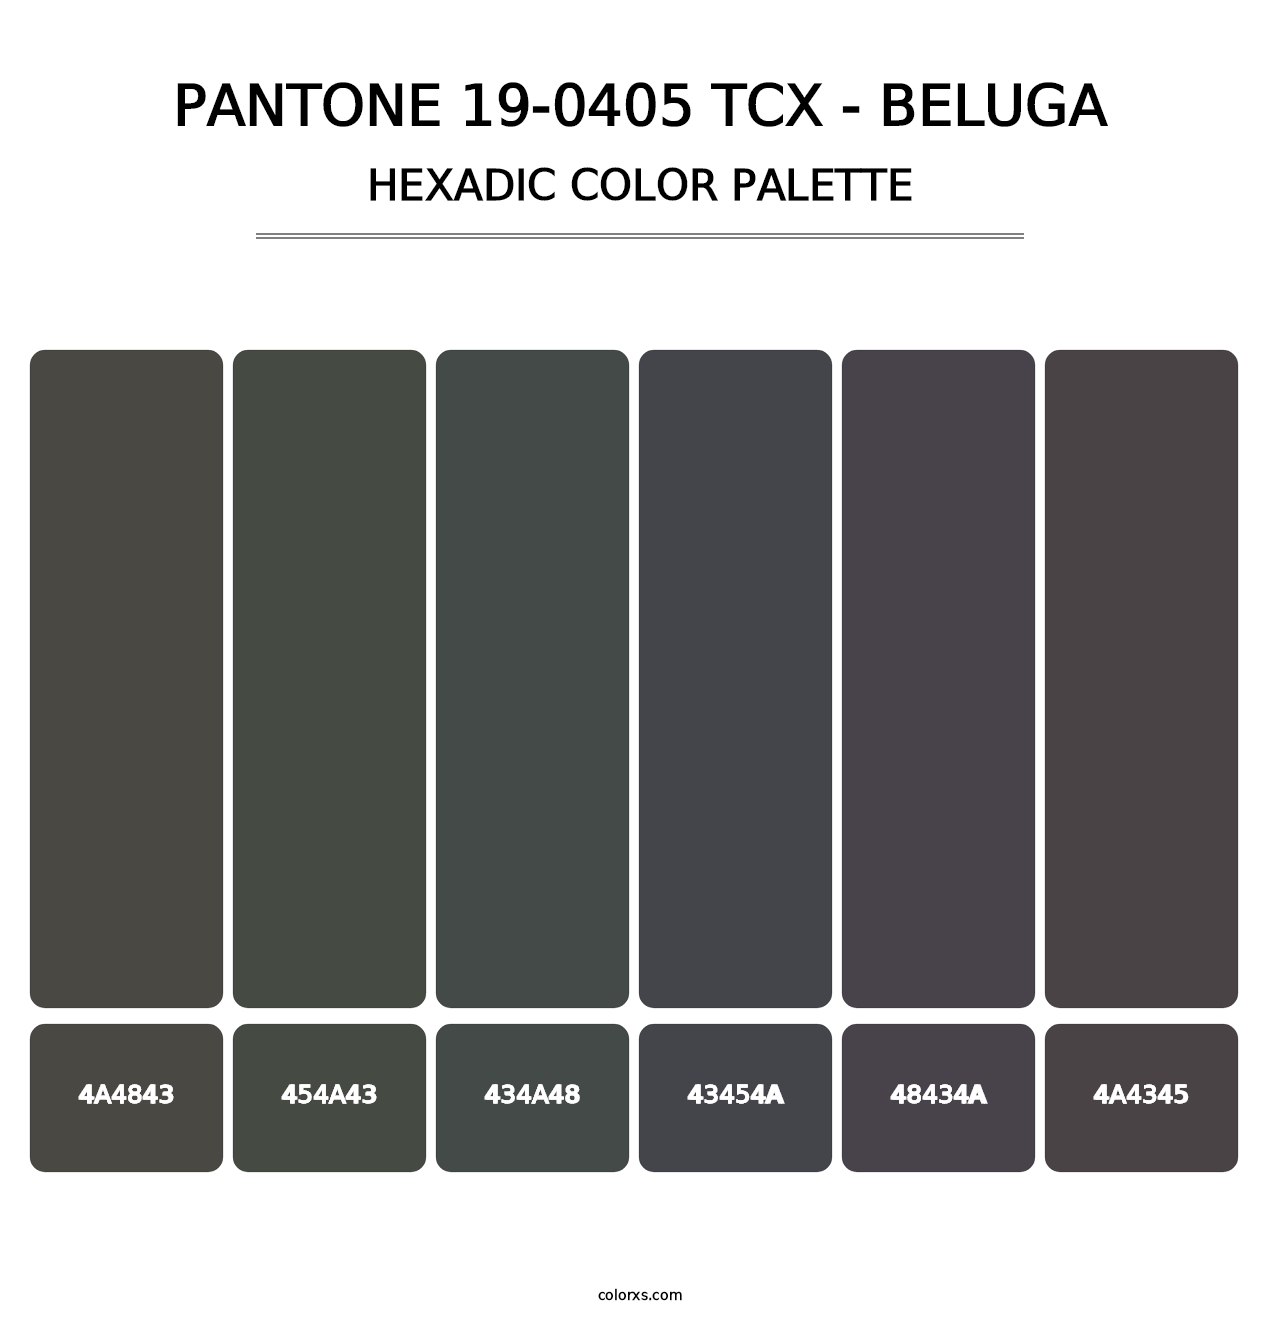 PANTONE 19-0405 TCX - Beluga - Hexadic Color Palette